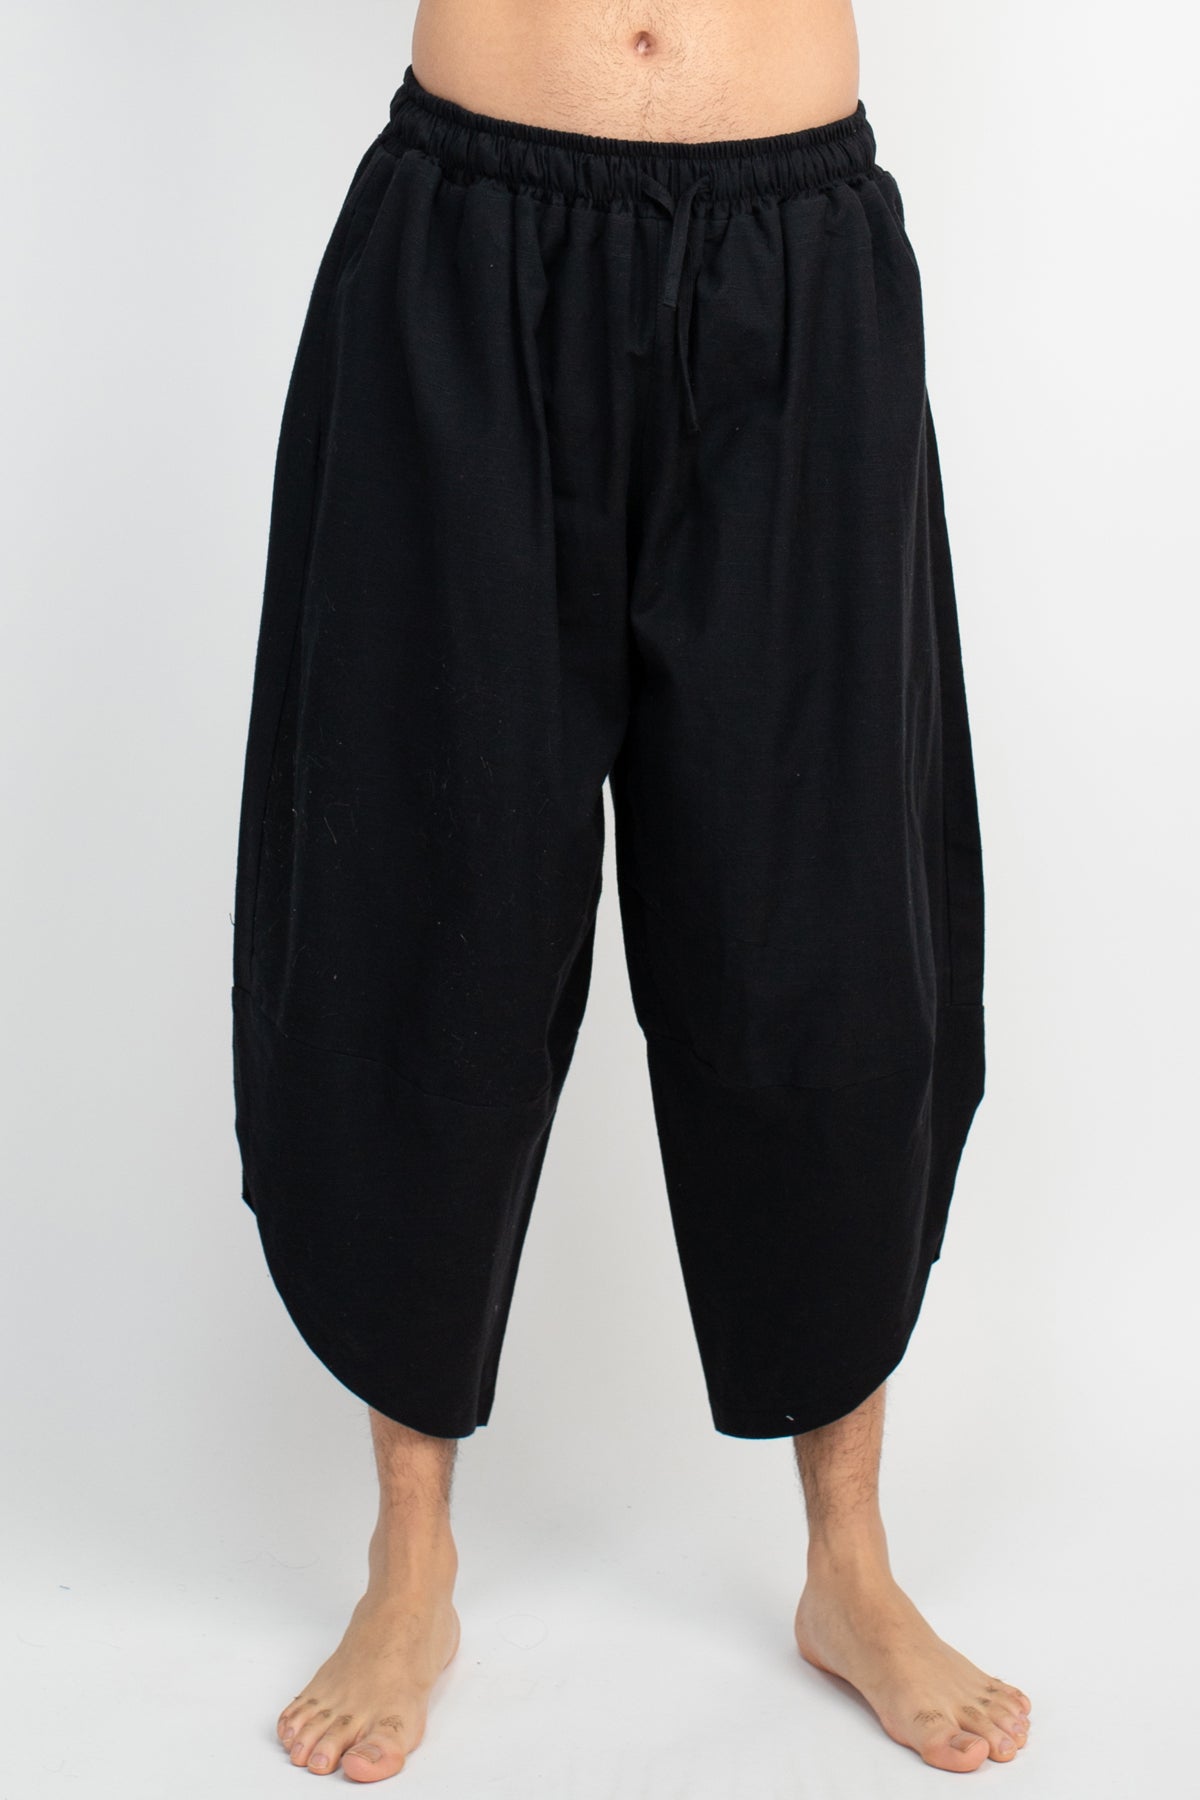 Black cotton Harem pants for dance classes